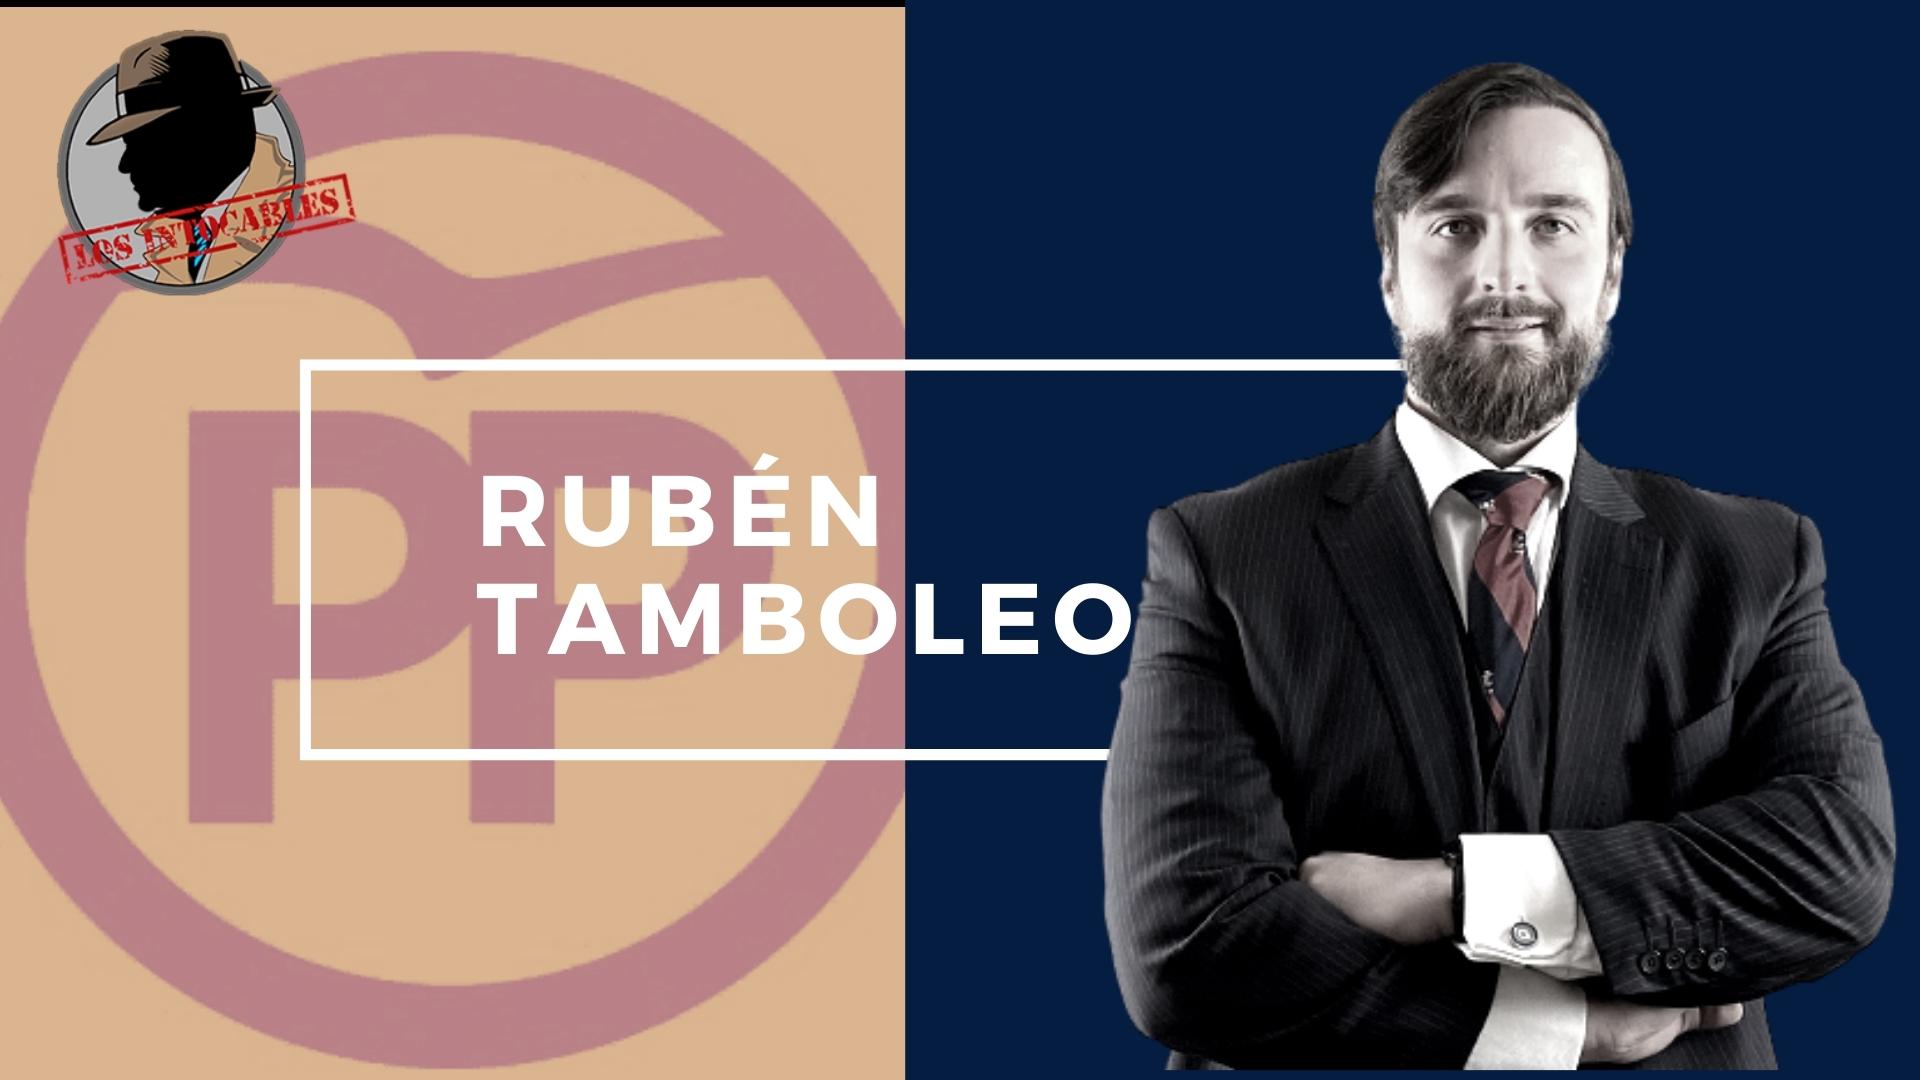 Ruben Tamboleo